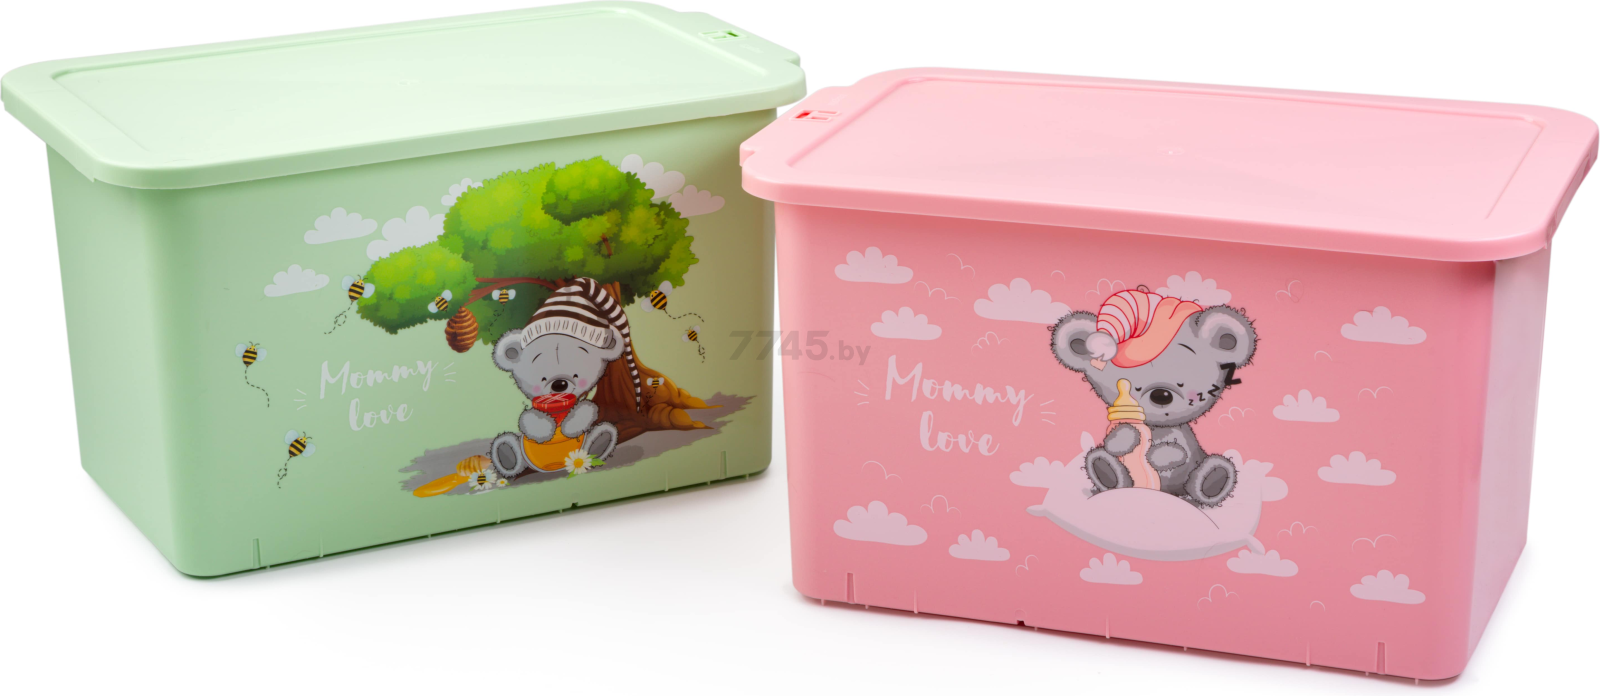 Ящик для игрушек BEROSSI Mommy love 15,7 л чайное дерево (АС49162000) - Фото 2